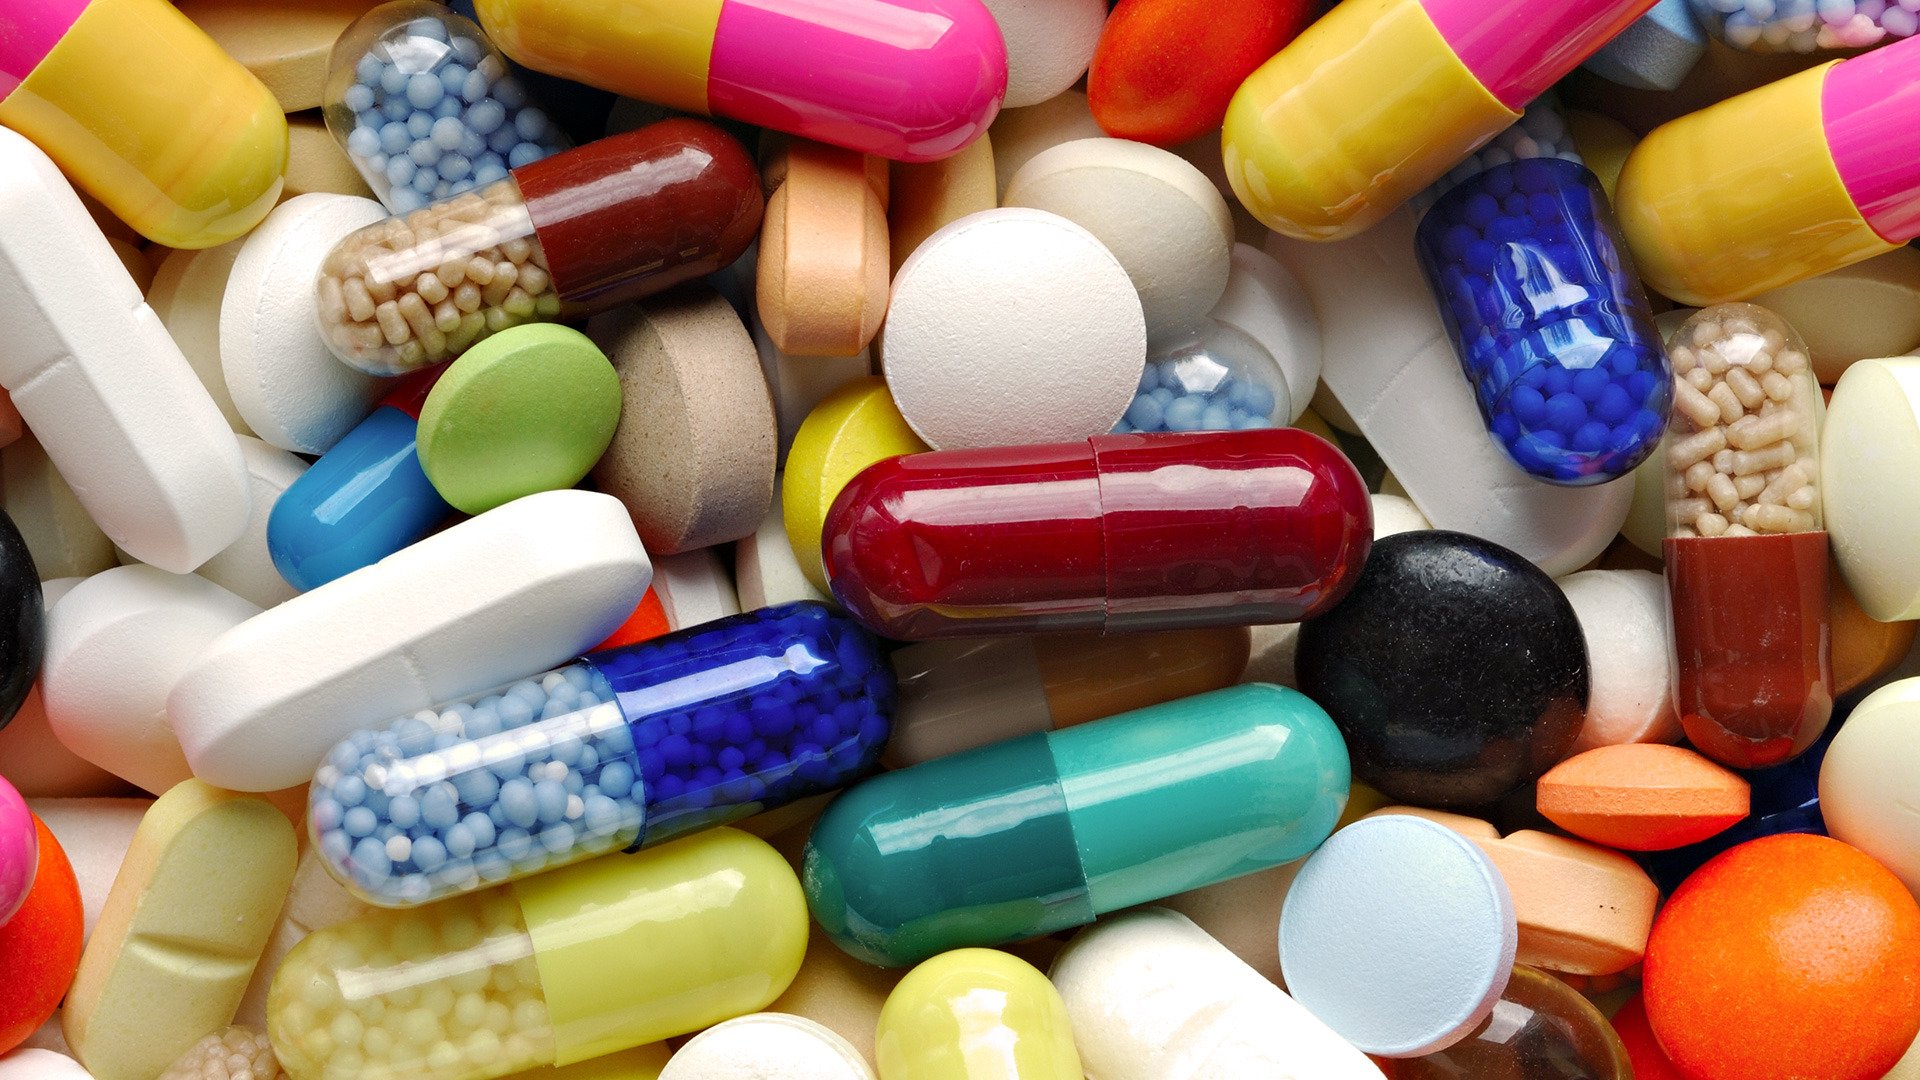 Бесплатные лекарства на 22,3 млрд. тенге отгружены в медорганизации страны за 1 квартал 2018г. в РК